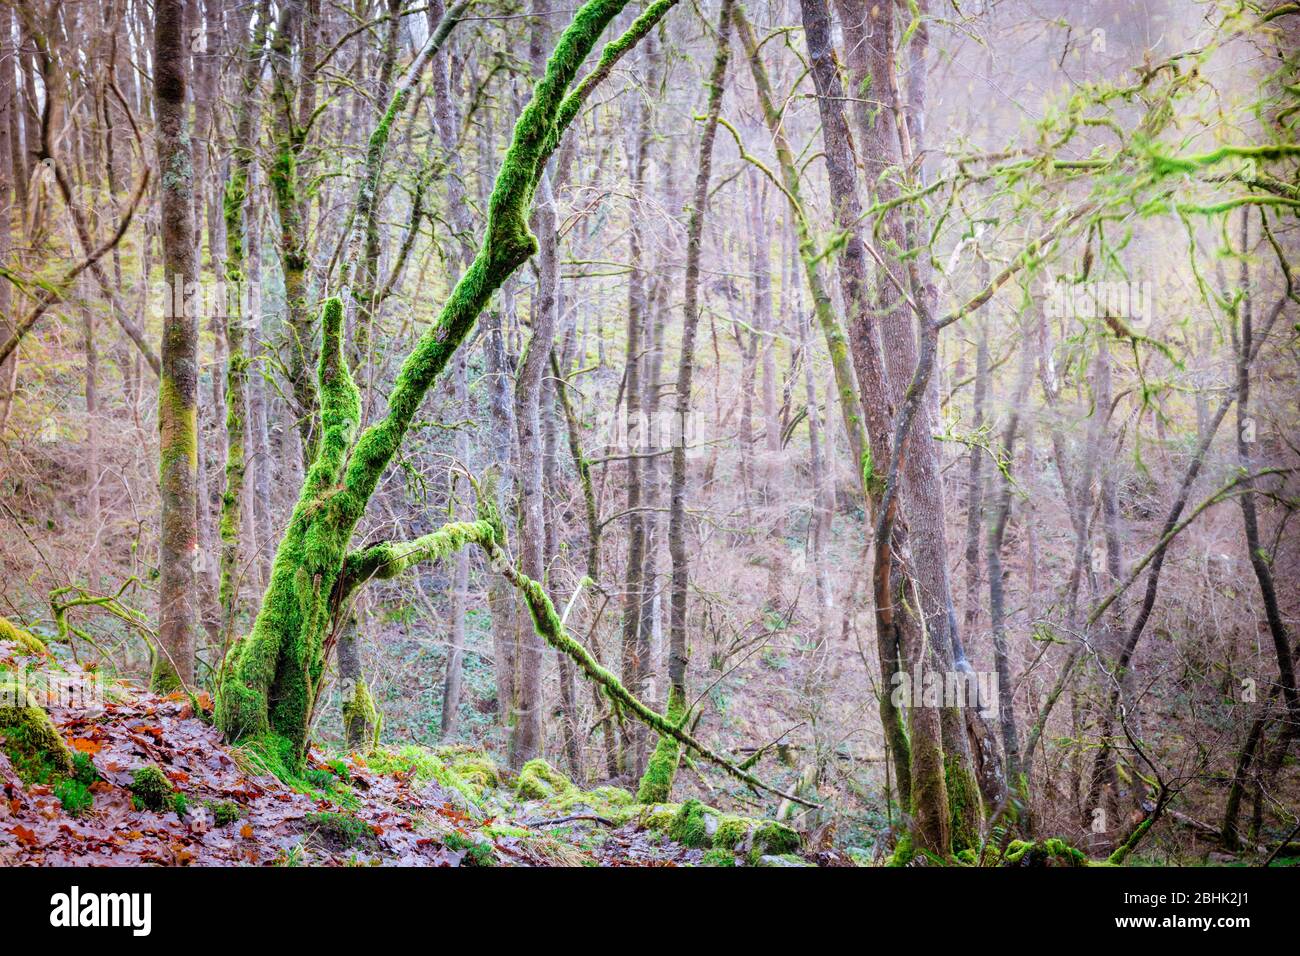 Moos bedeckte Bäume auf dem Elidir Trail, legendärer Eingang zum Märchenreich, im Fforest Ffaw Geopark (großer Wald) in den Brecon Beacons Stockfoto